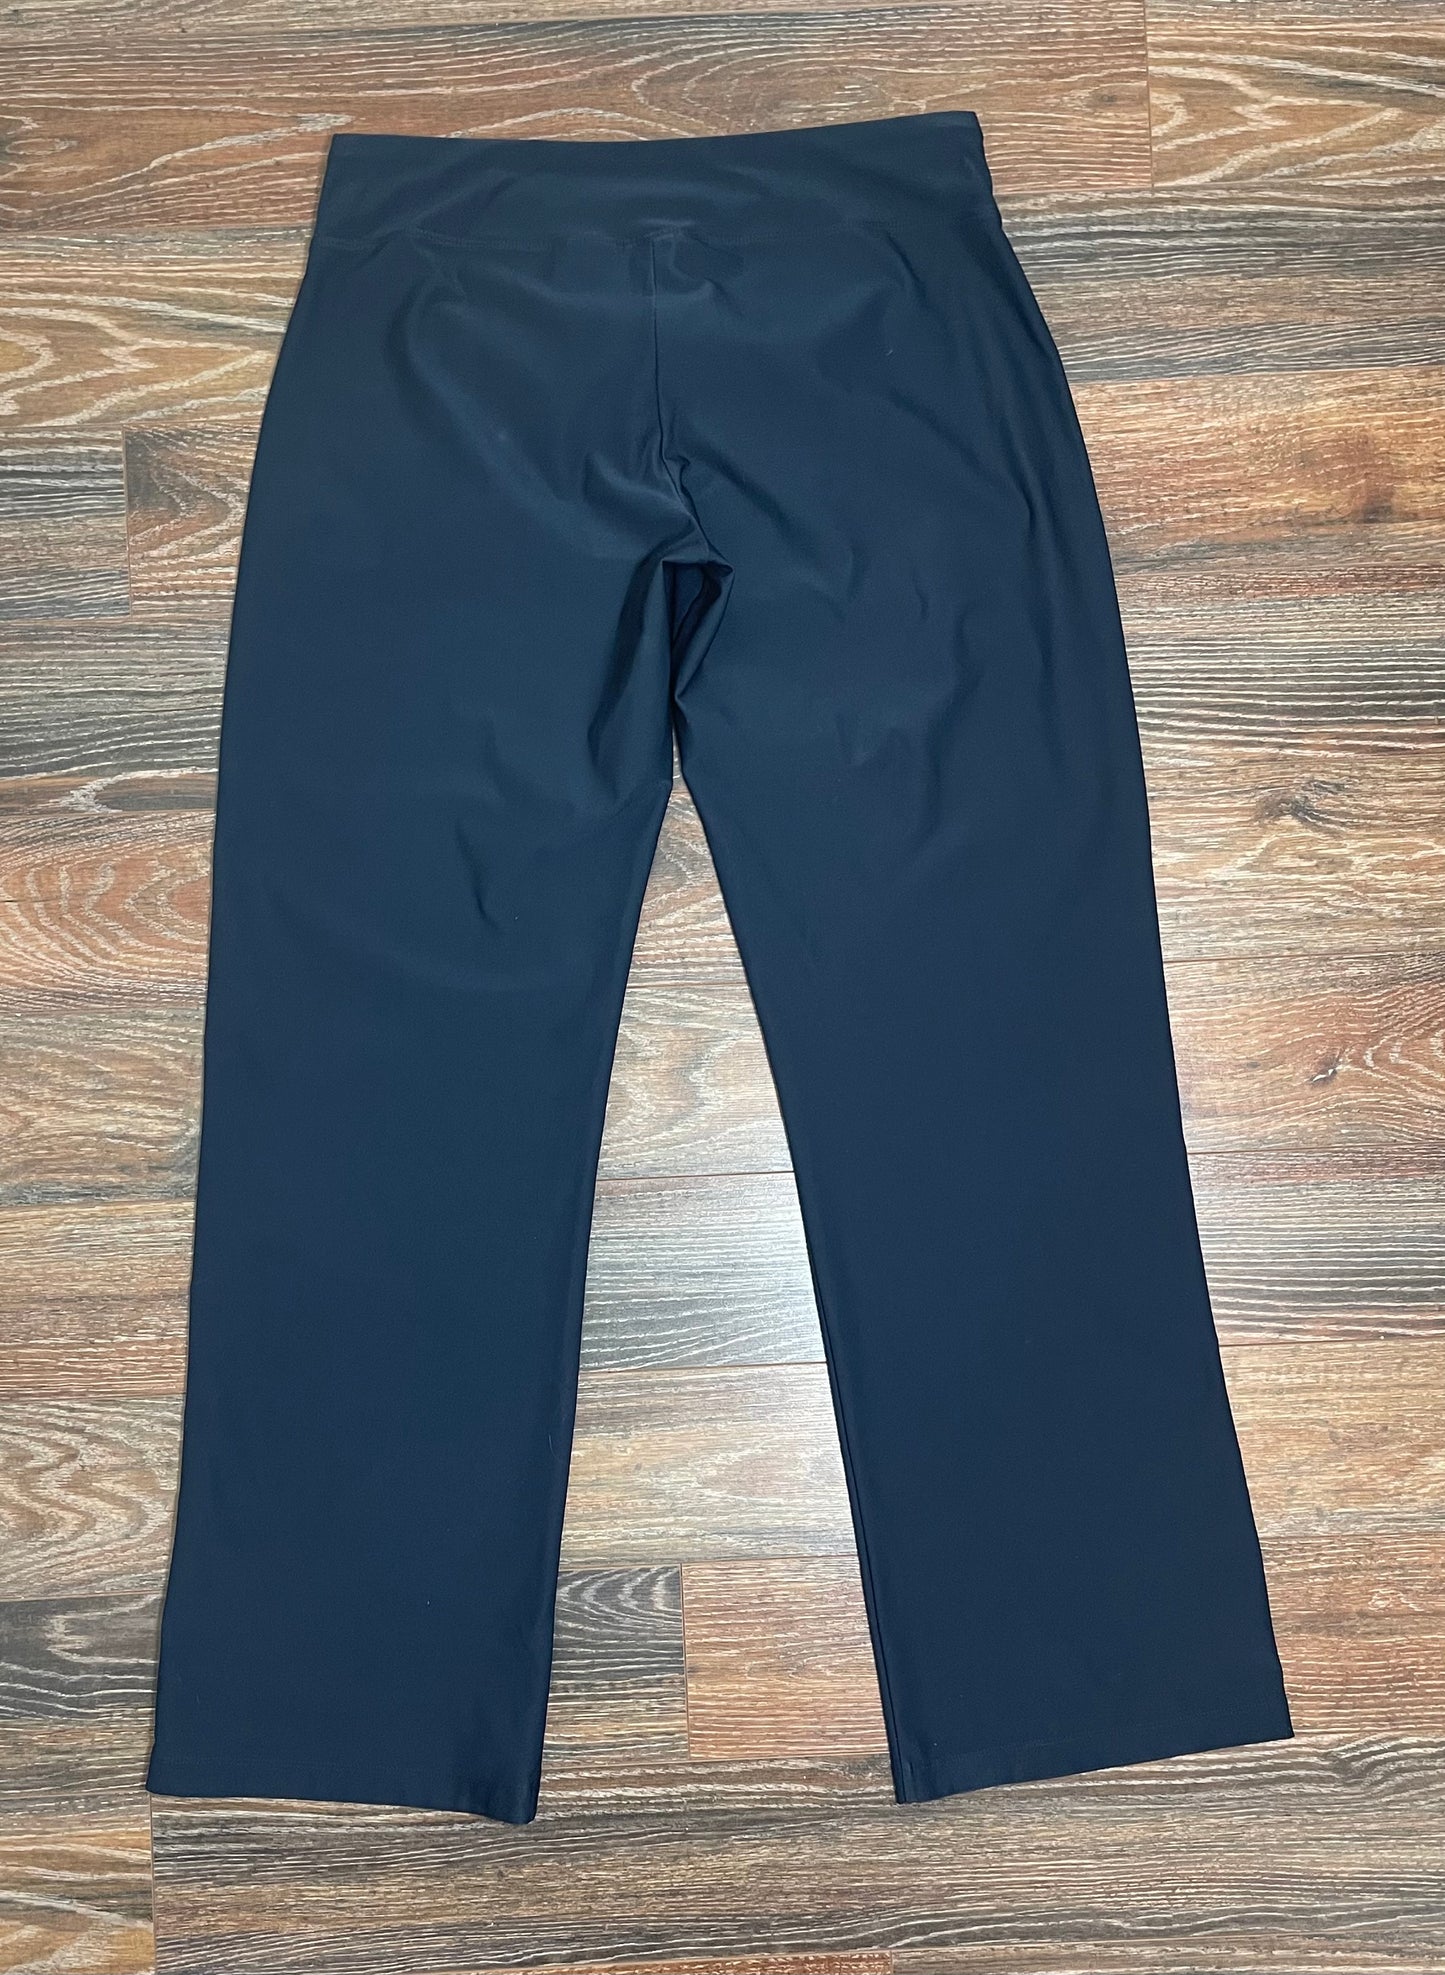 Men’s Nike Dri Fit Pants (Large 12-14)